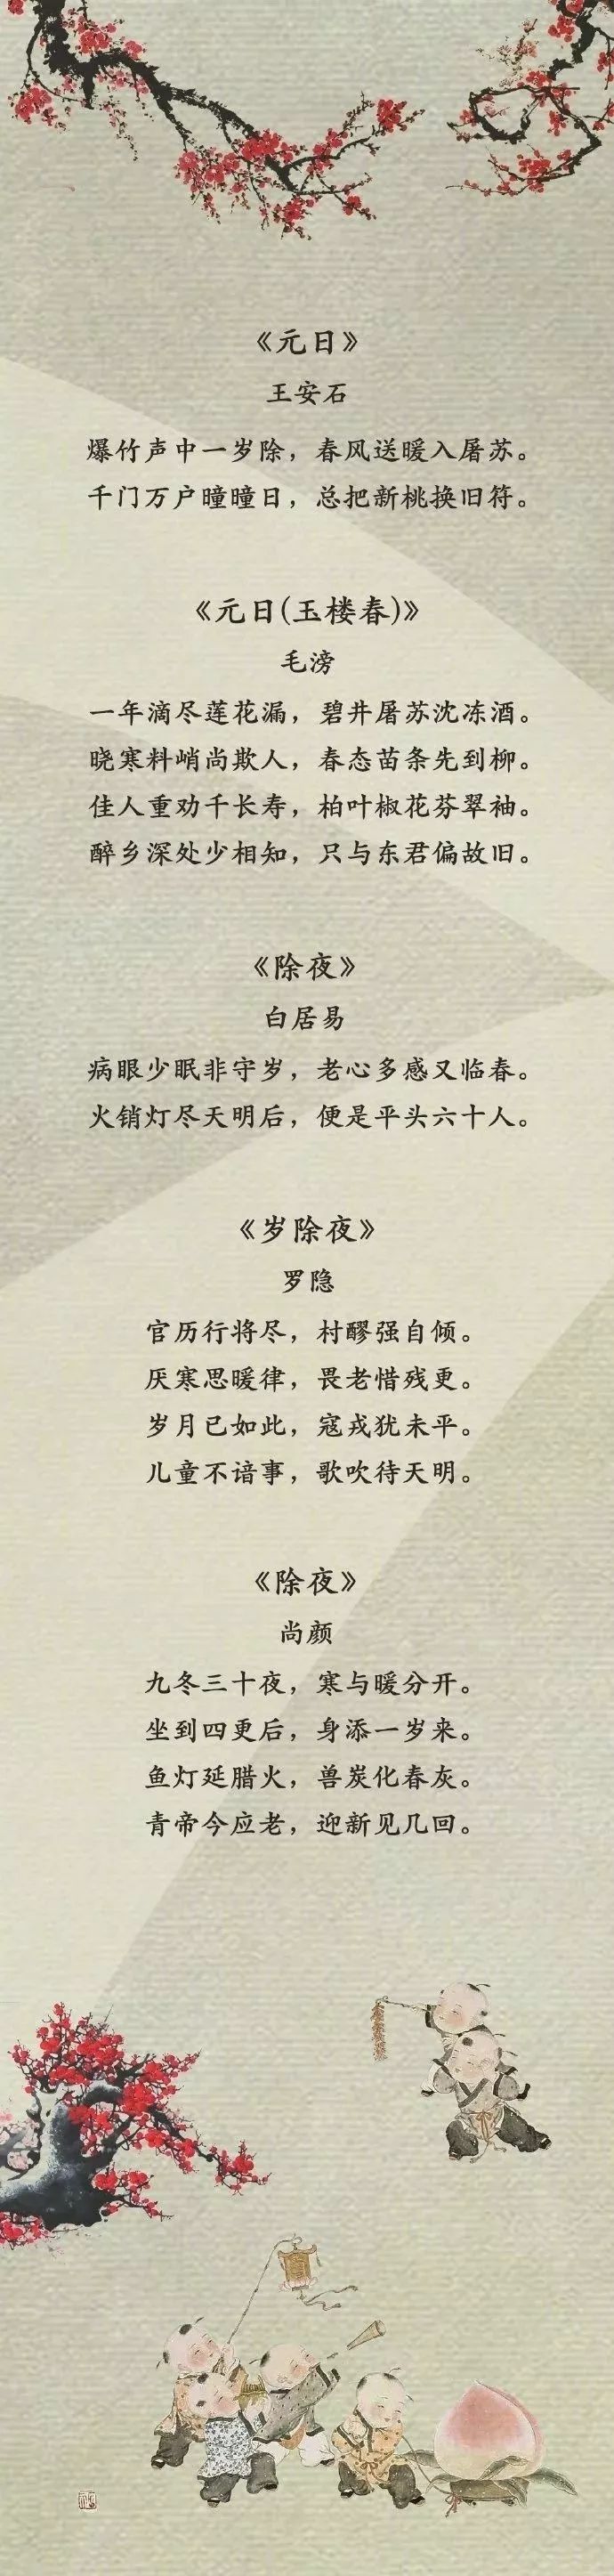 这50首关于春节的典古诗词太有韵味了